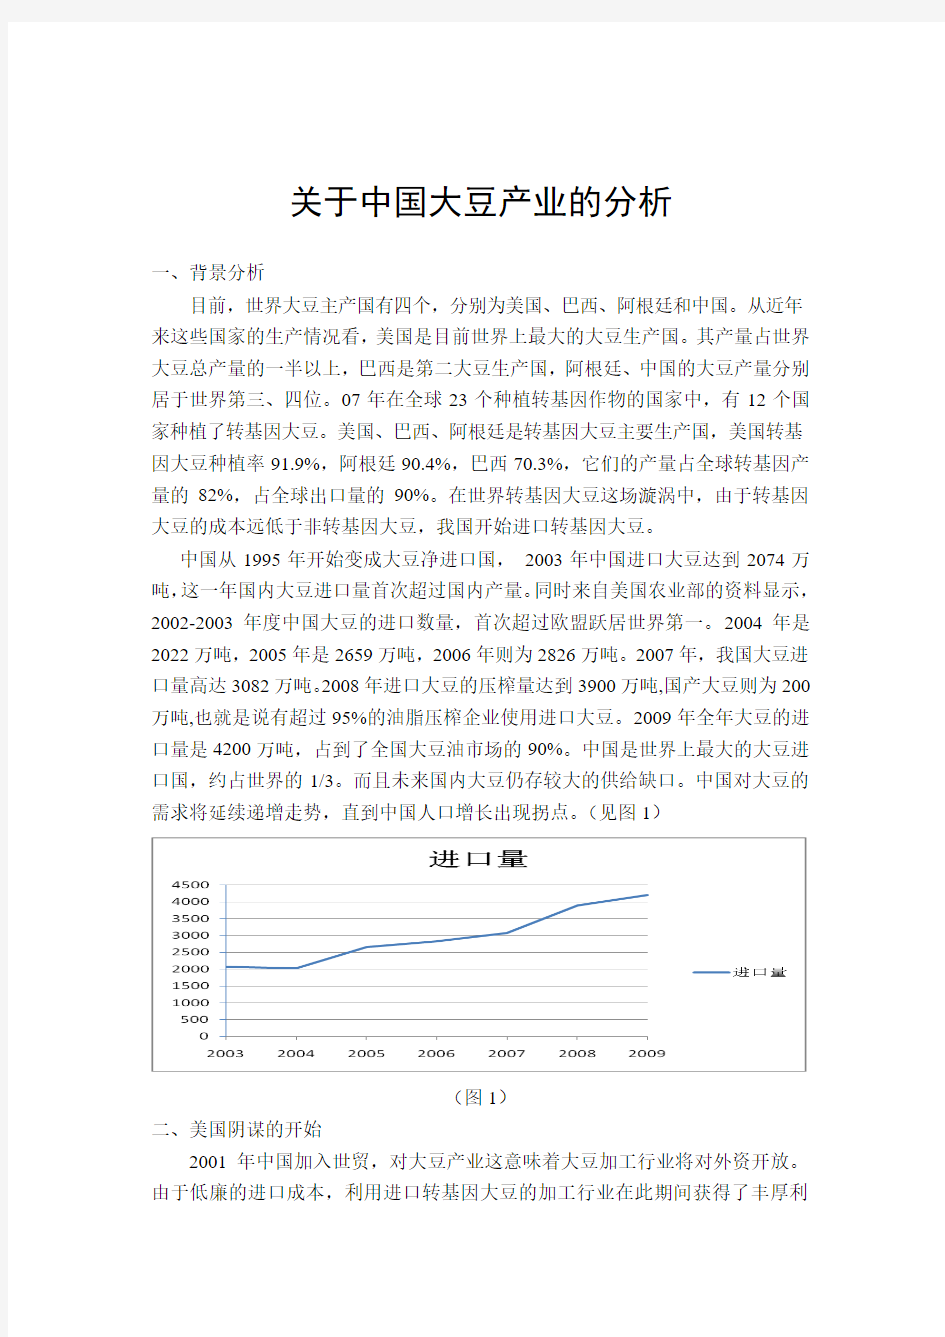 关于中国大豆产业的分析